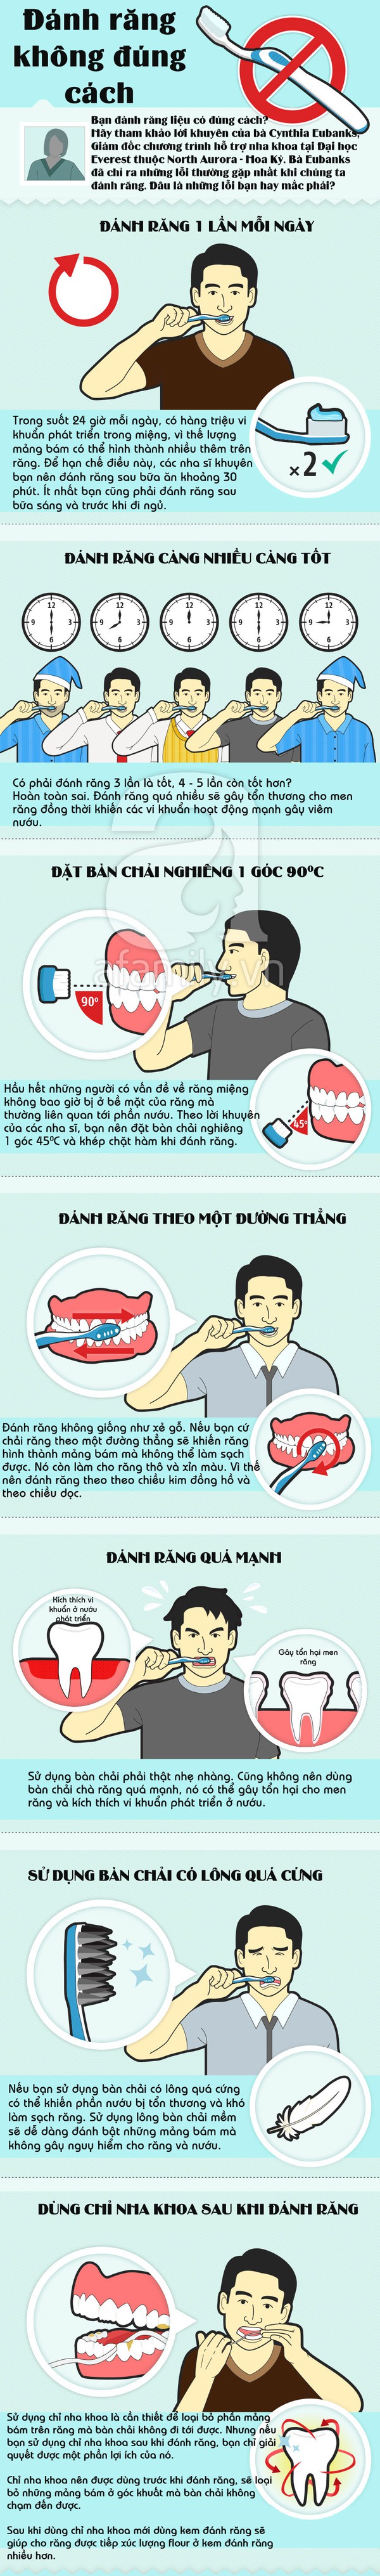 Những lỗi thường gặp nhất khi đánh răng 1